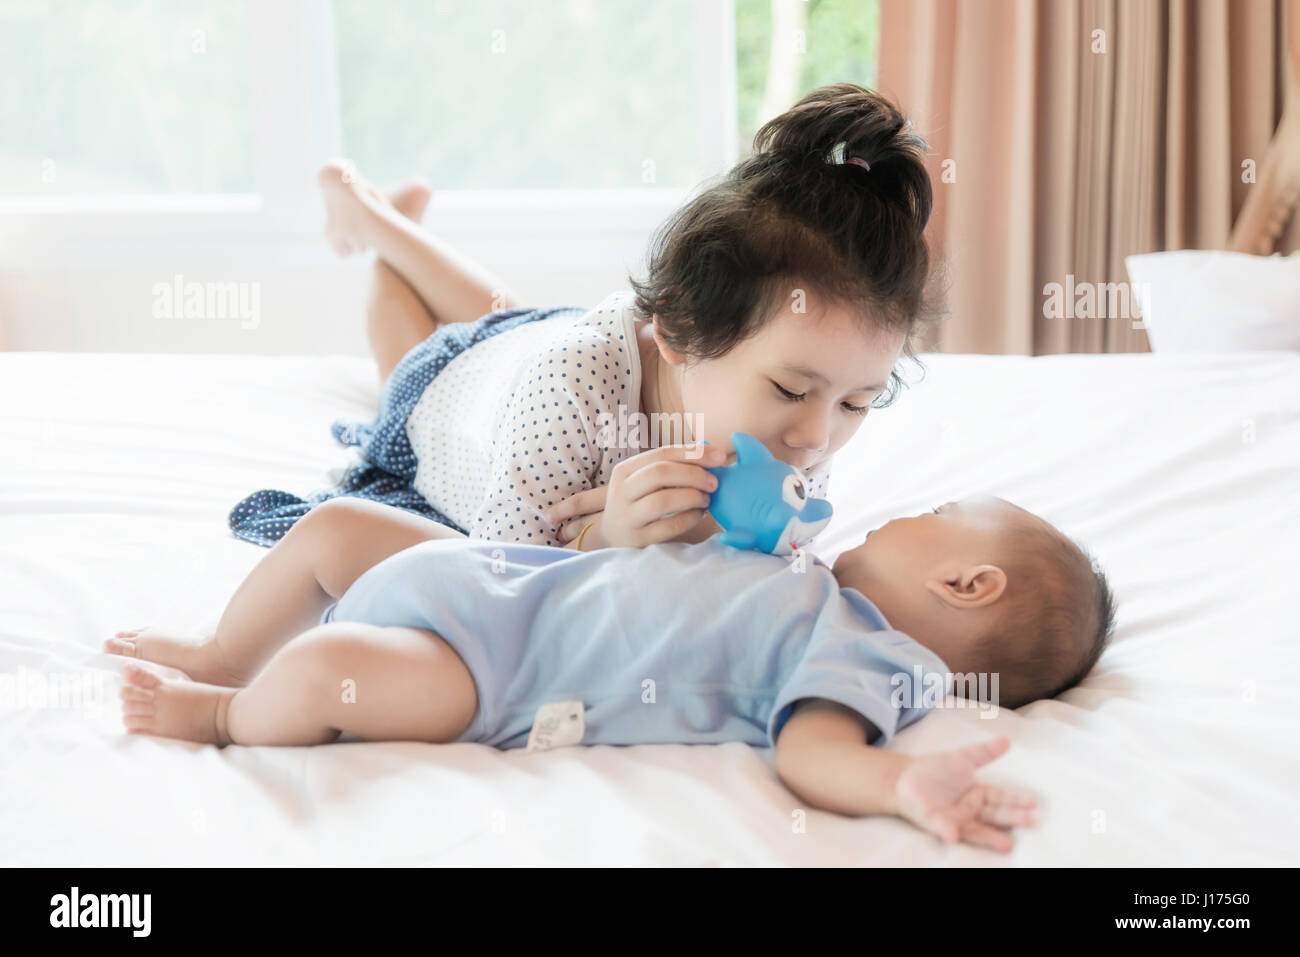 Asiatisches Baby Bruder und Kleinkind Schwester Drill Puppe im Schlafzimmer. Glückliche Familie. Stockfoto